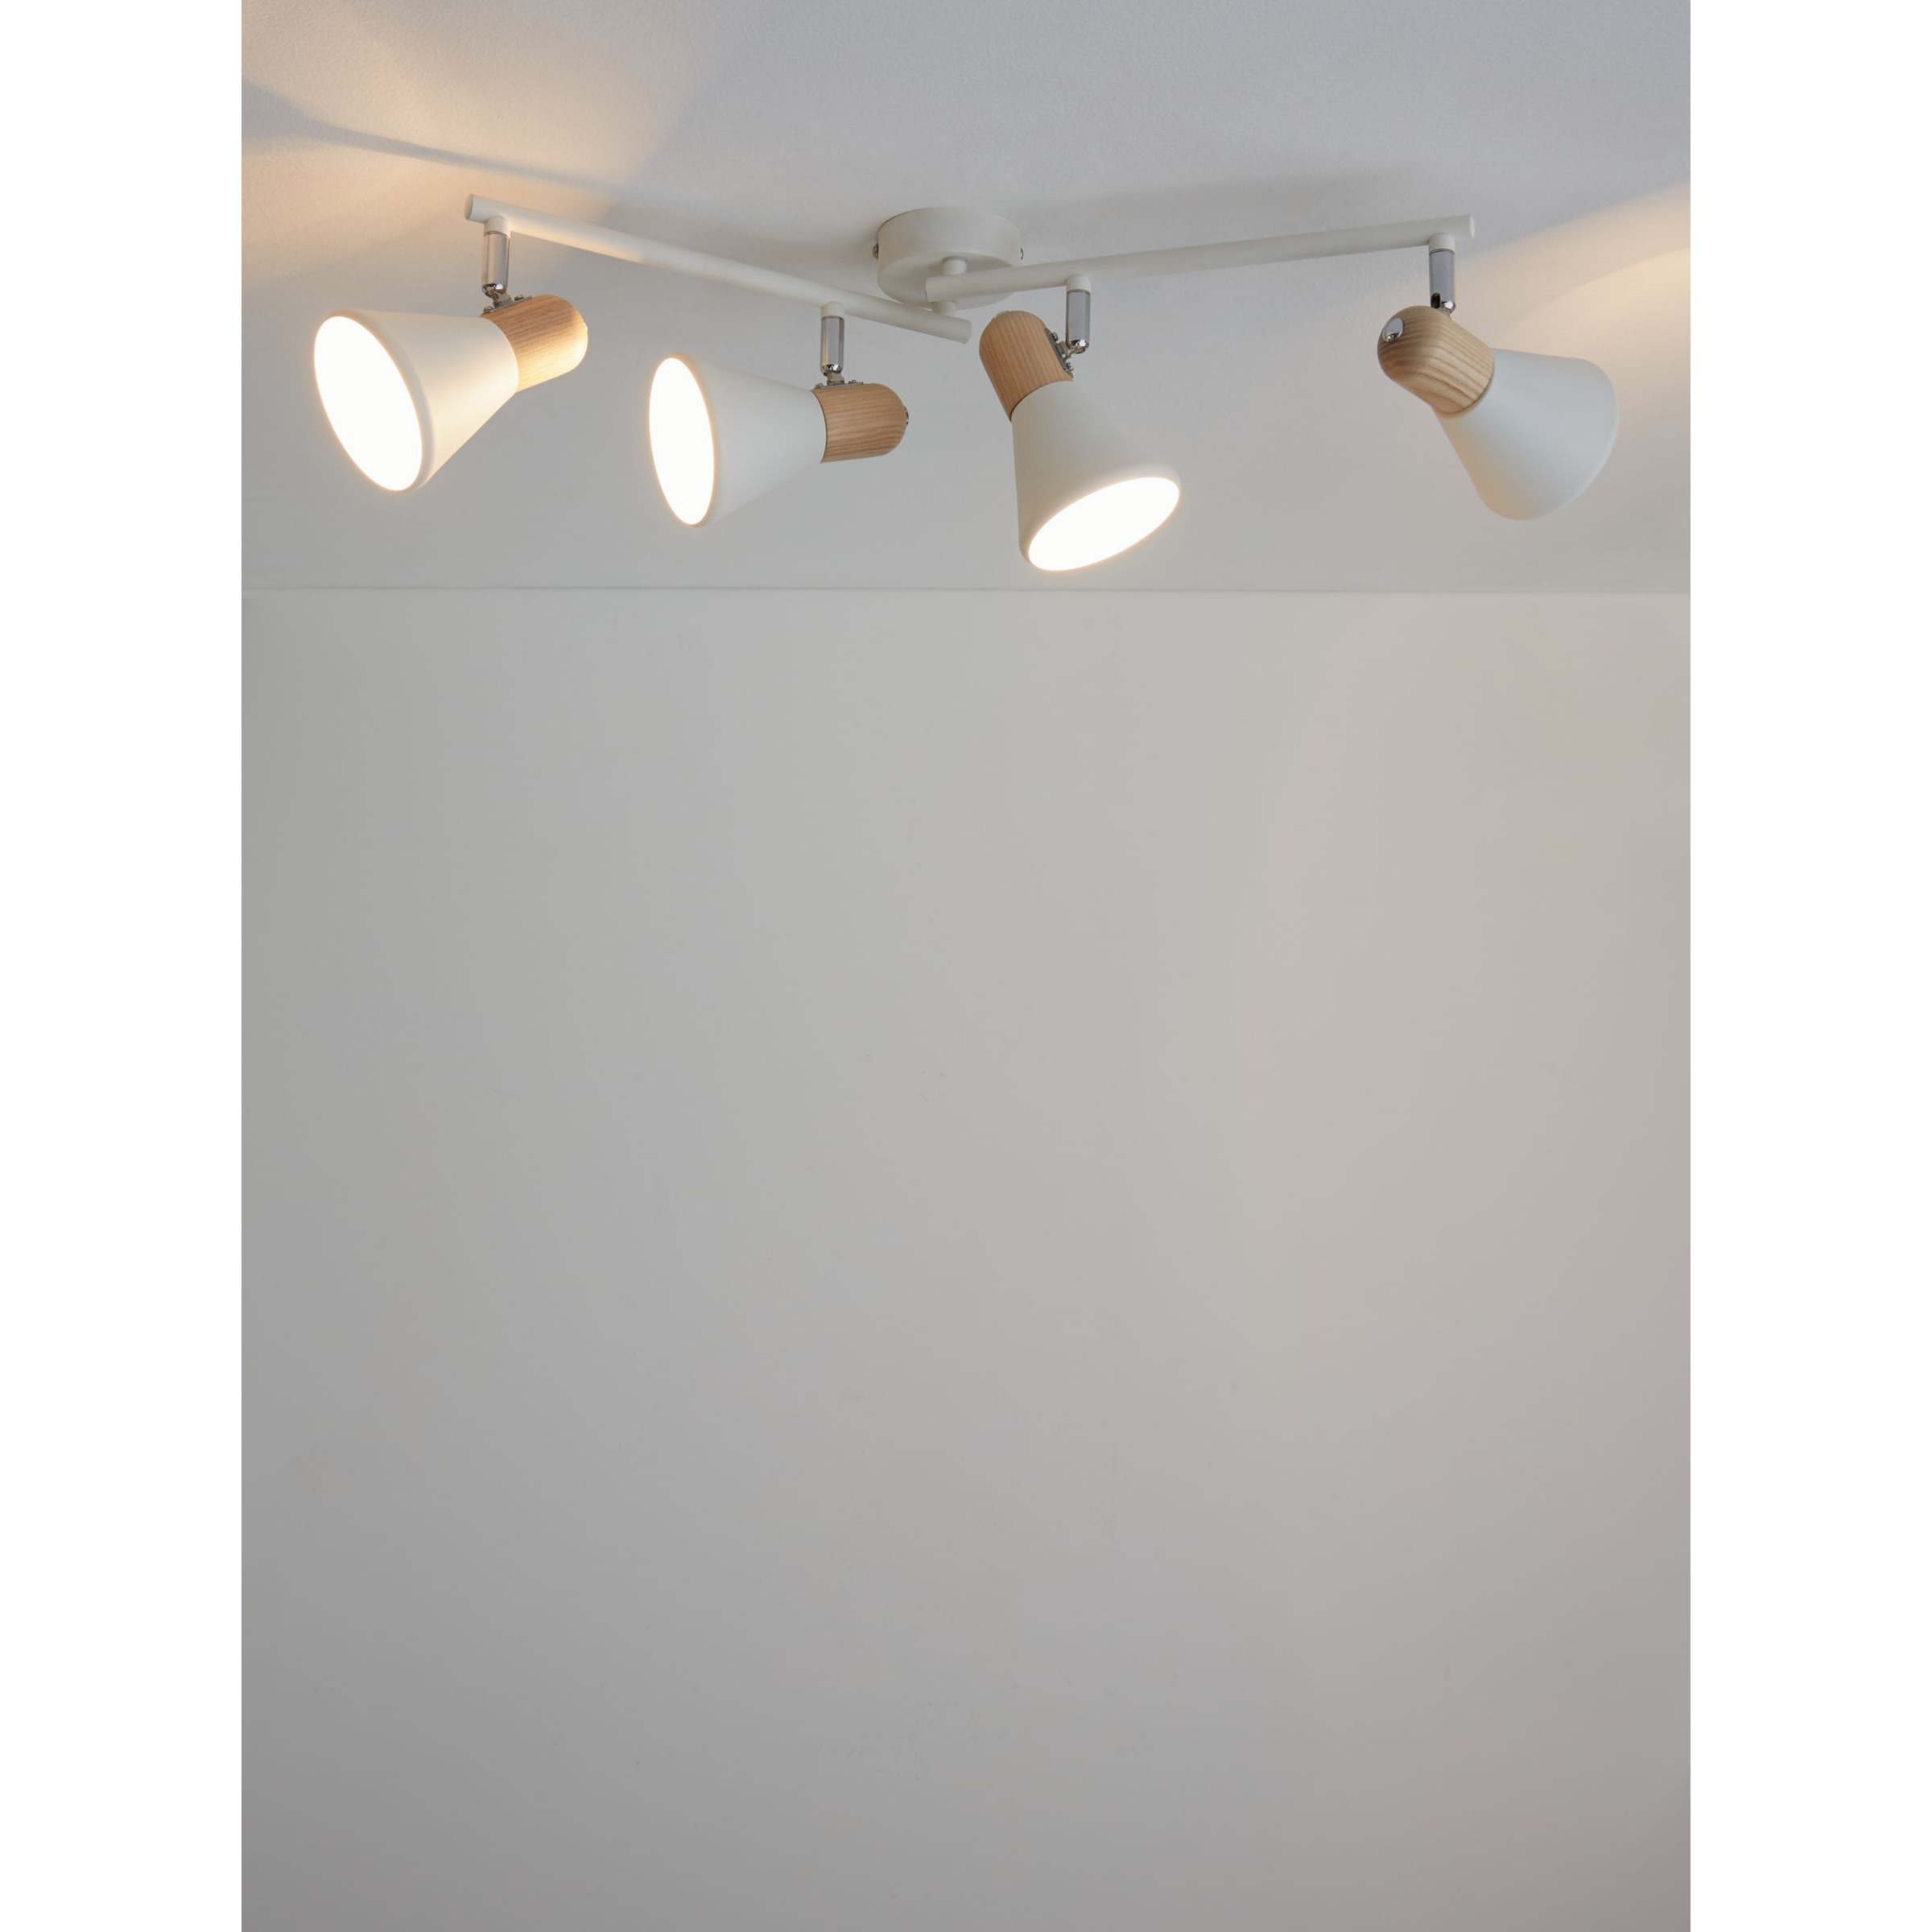 John Lewis SES LED 4 Spotlight Ceiling Bar, White/Wood - image 1